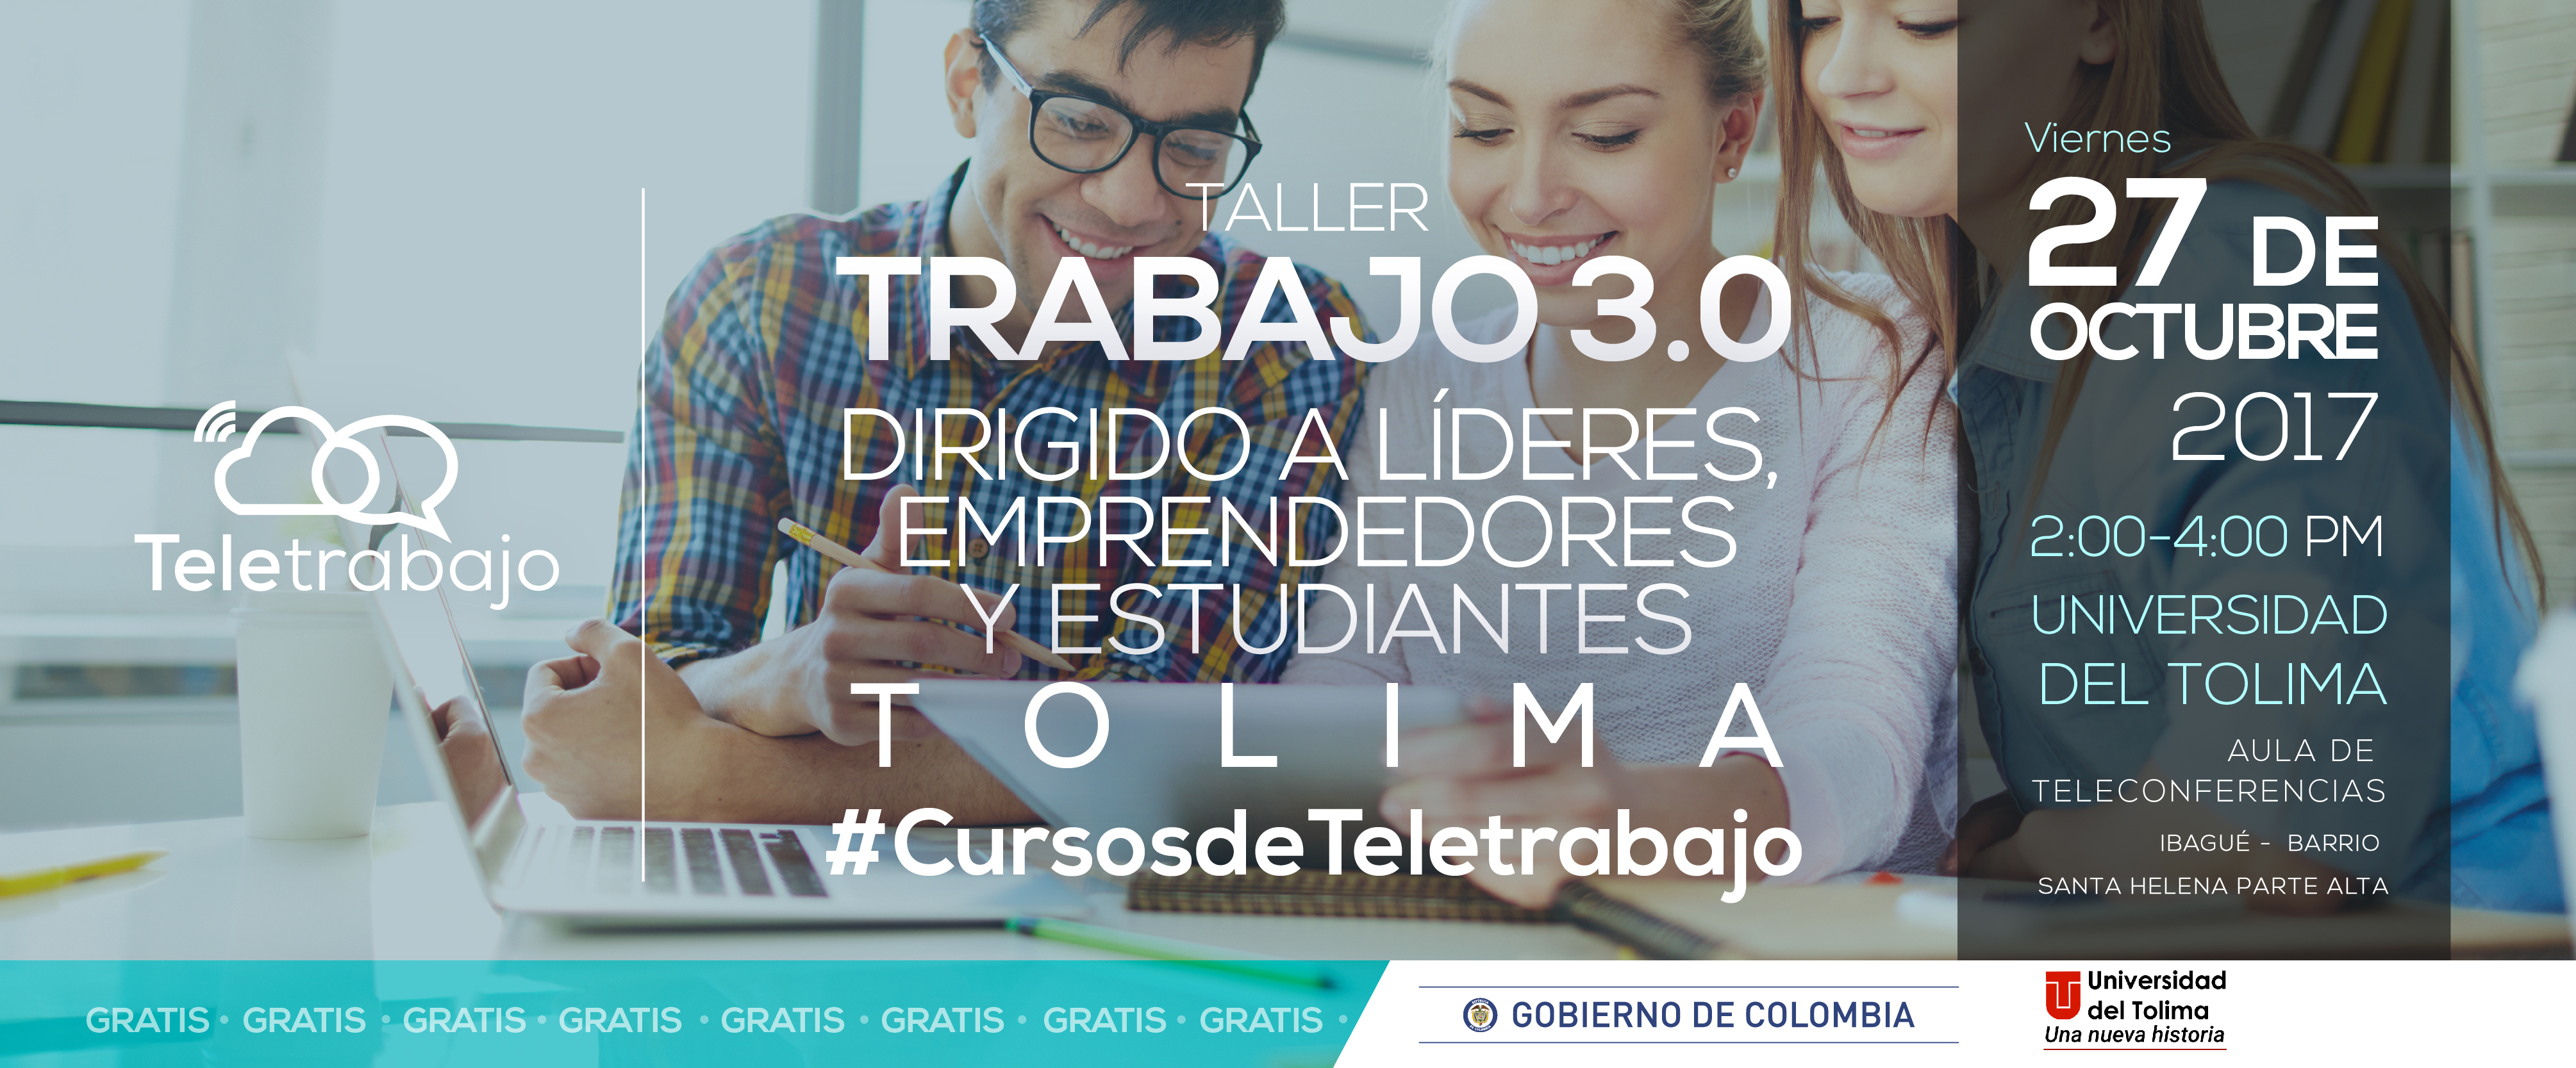 Aprenda sobre Teletrabajo en la Universidad del Tolima